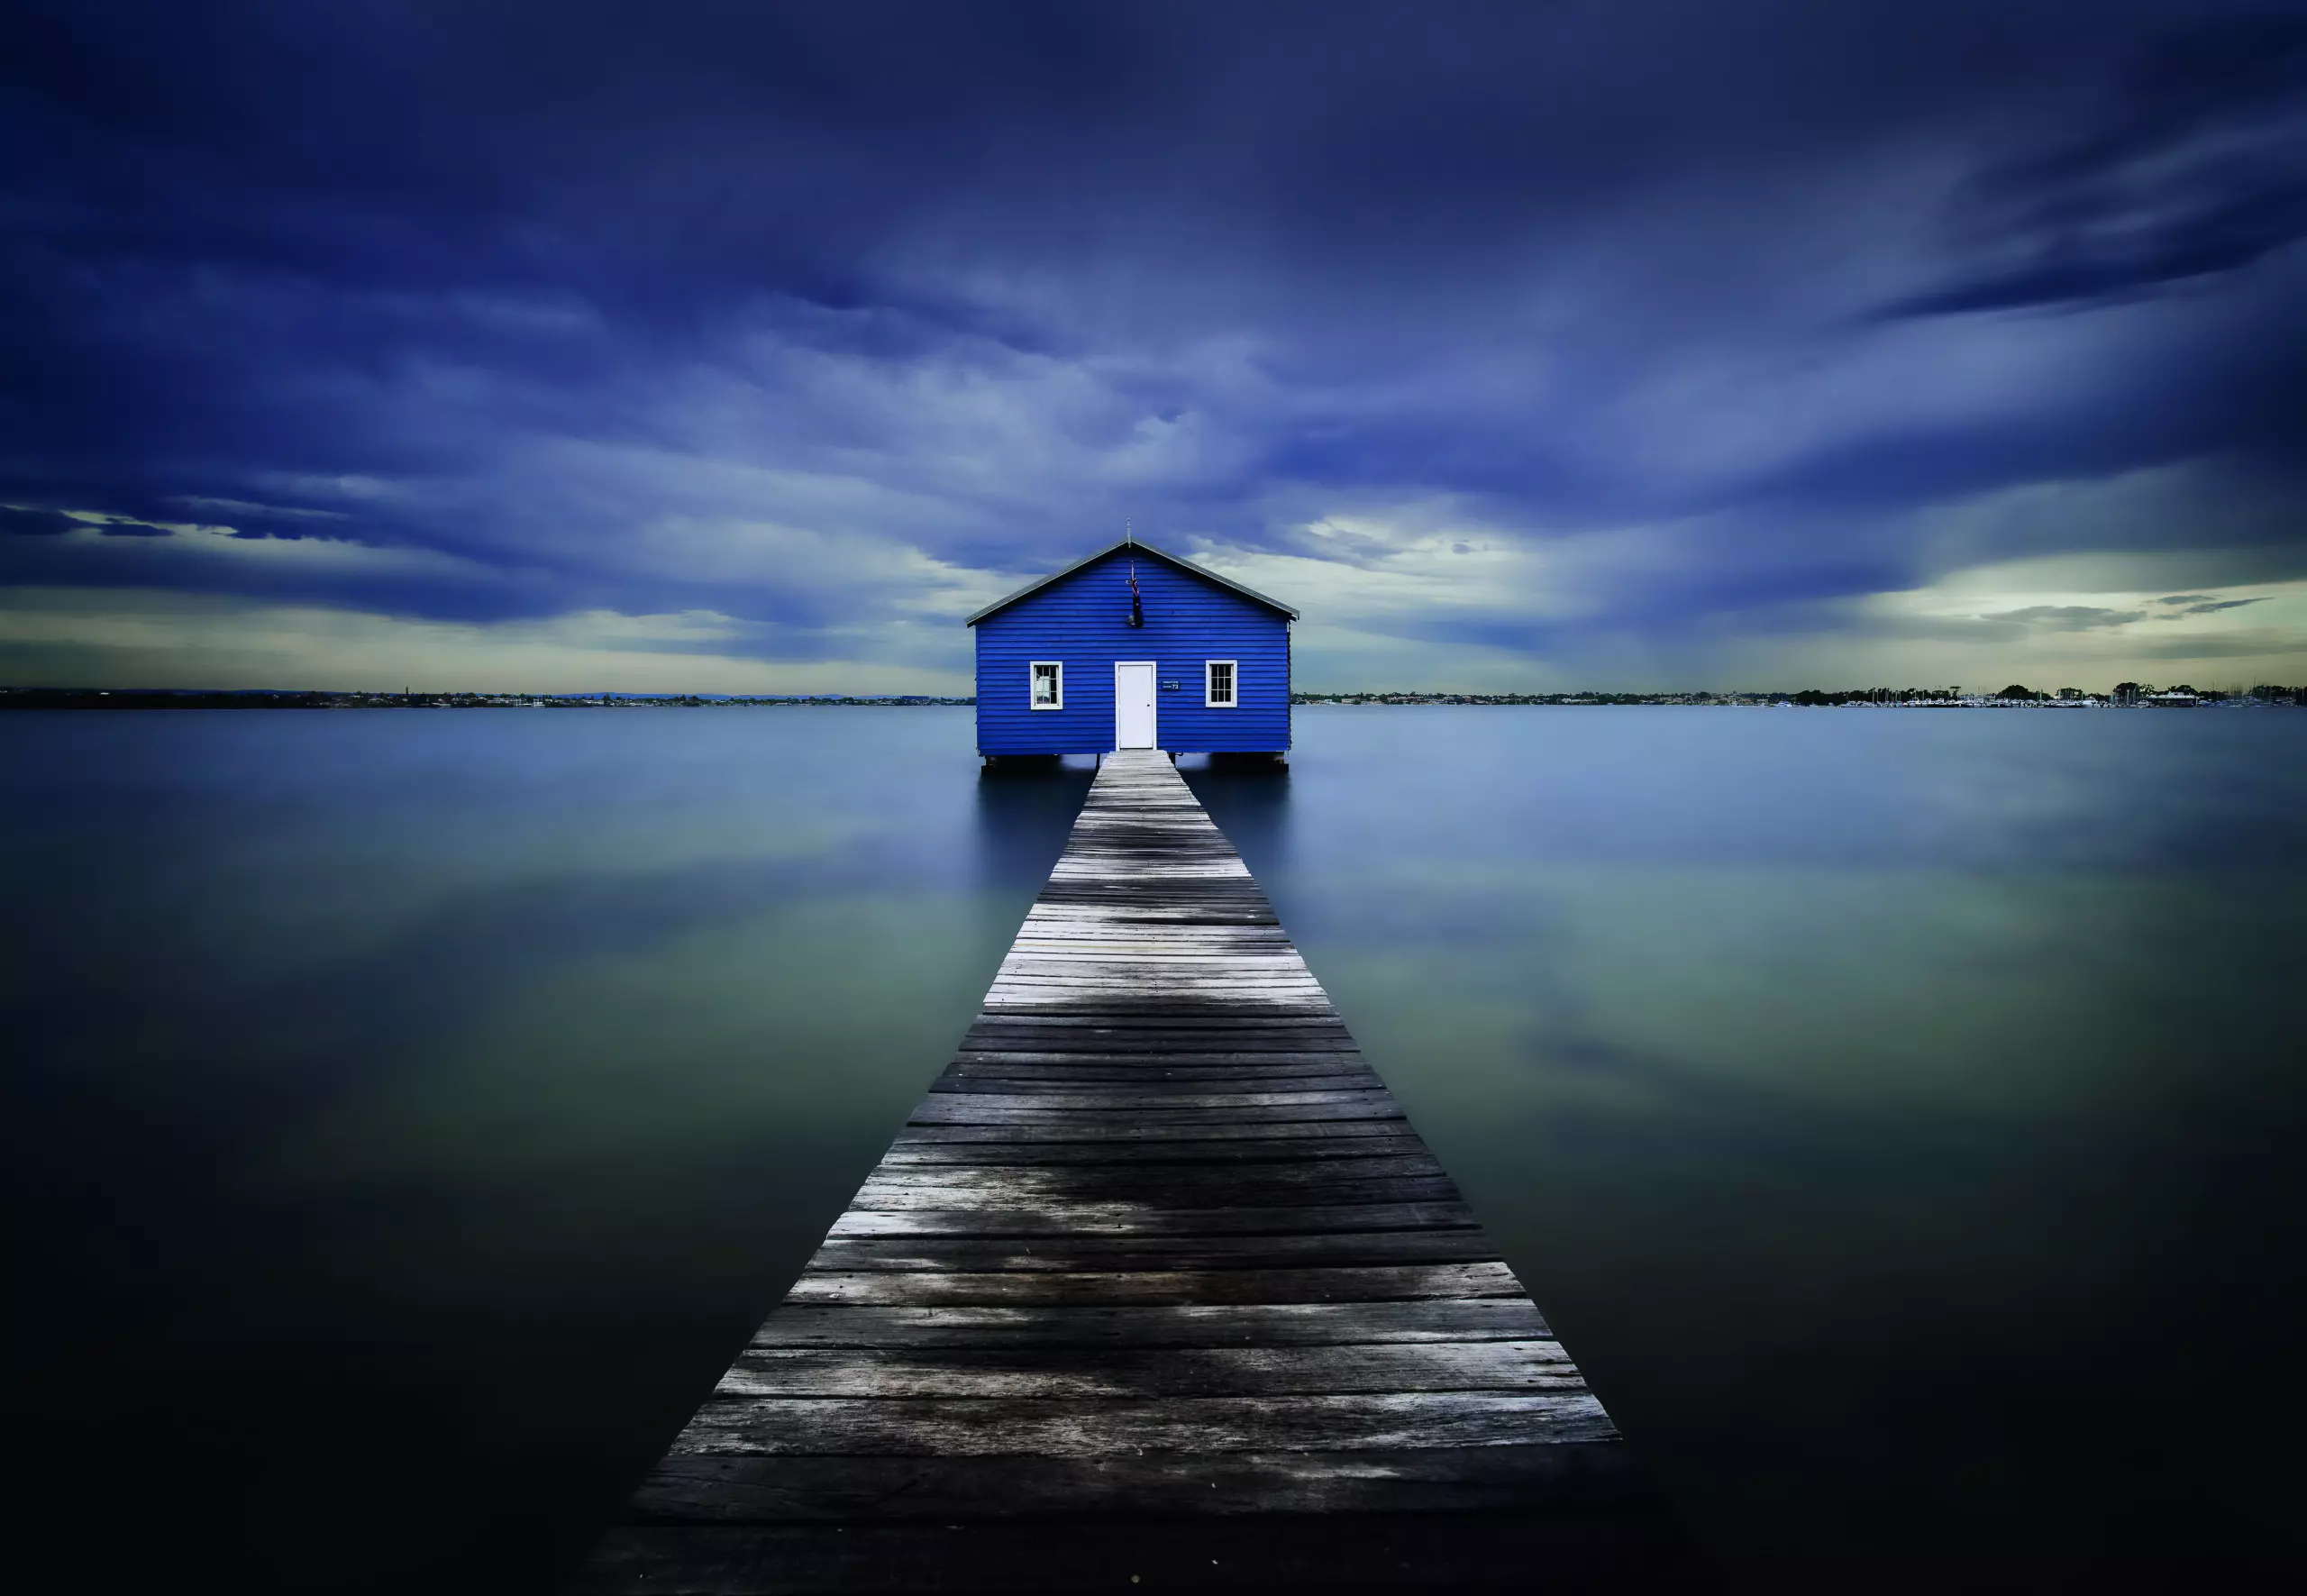 Wandbild (5140) The Blue Boatshed by Leah Kennedy präsentiert: Wasser,Architektur,Natur,Landschaften,Häuser,Stege,Winter,Gewässer,Meere,Seen,Wasserspiegelungen